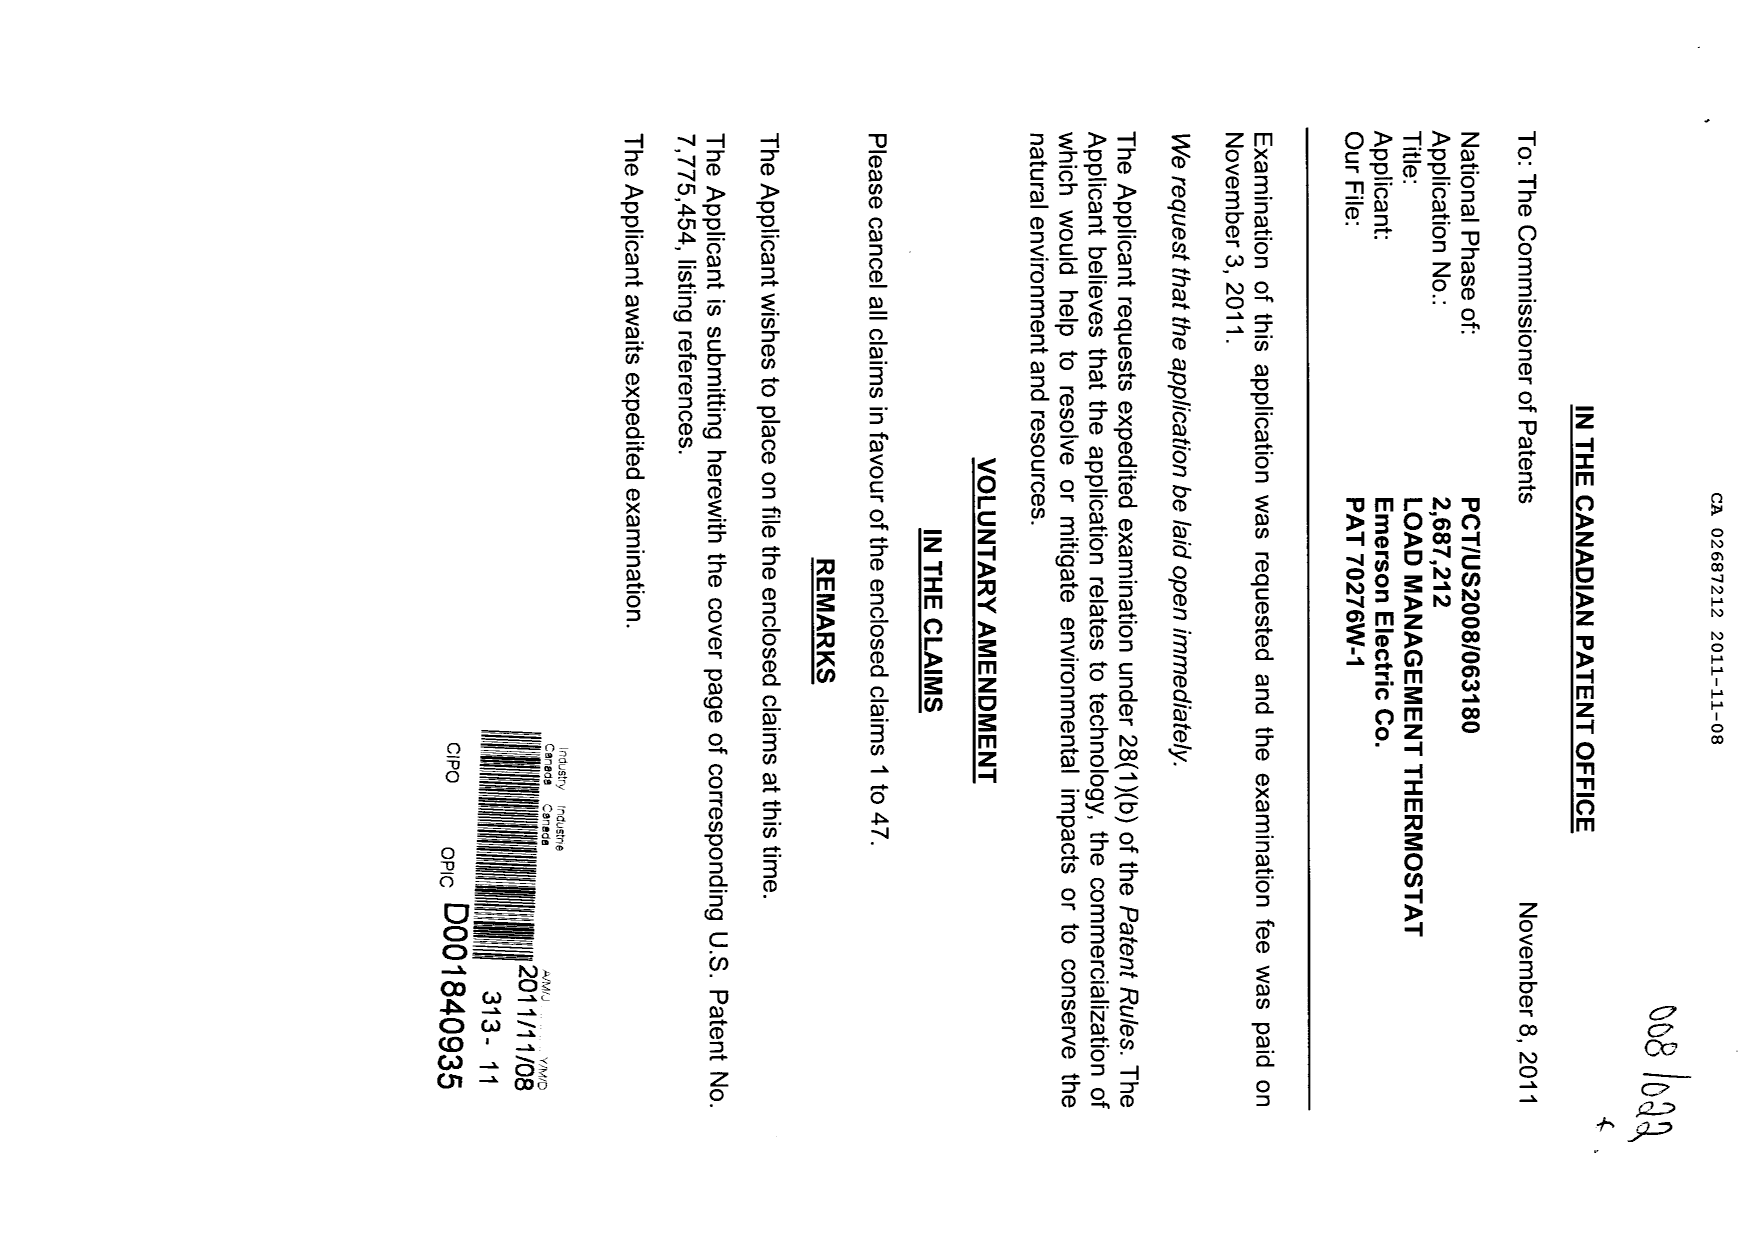 Document de brevet canadien 2687212. Correspondance 20111108. Image 1 de 2